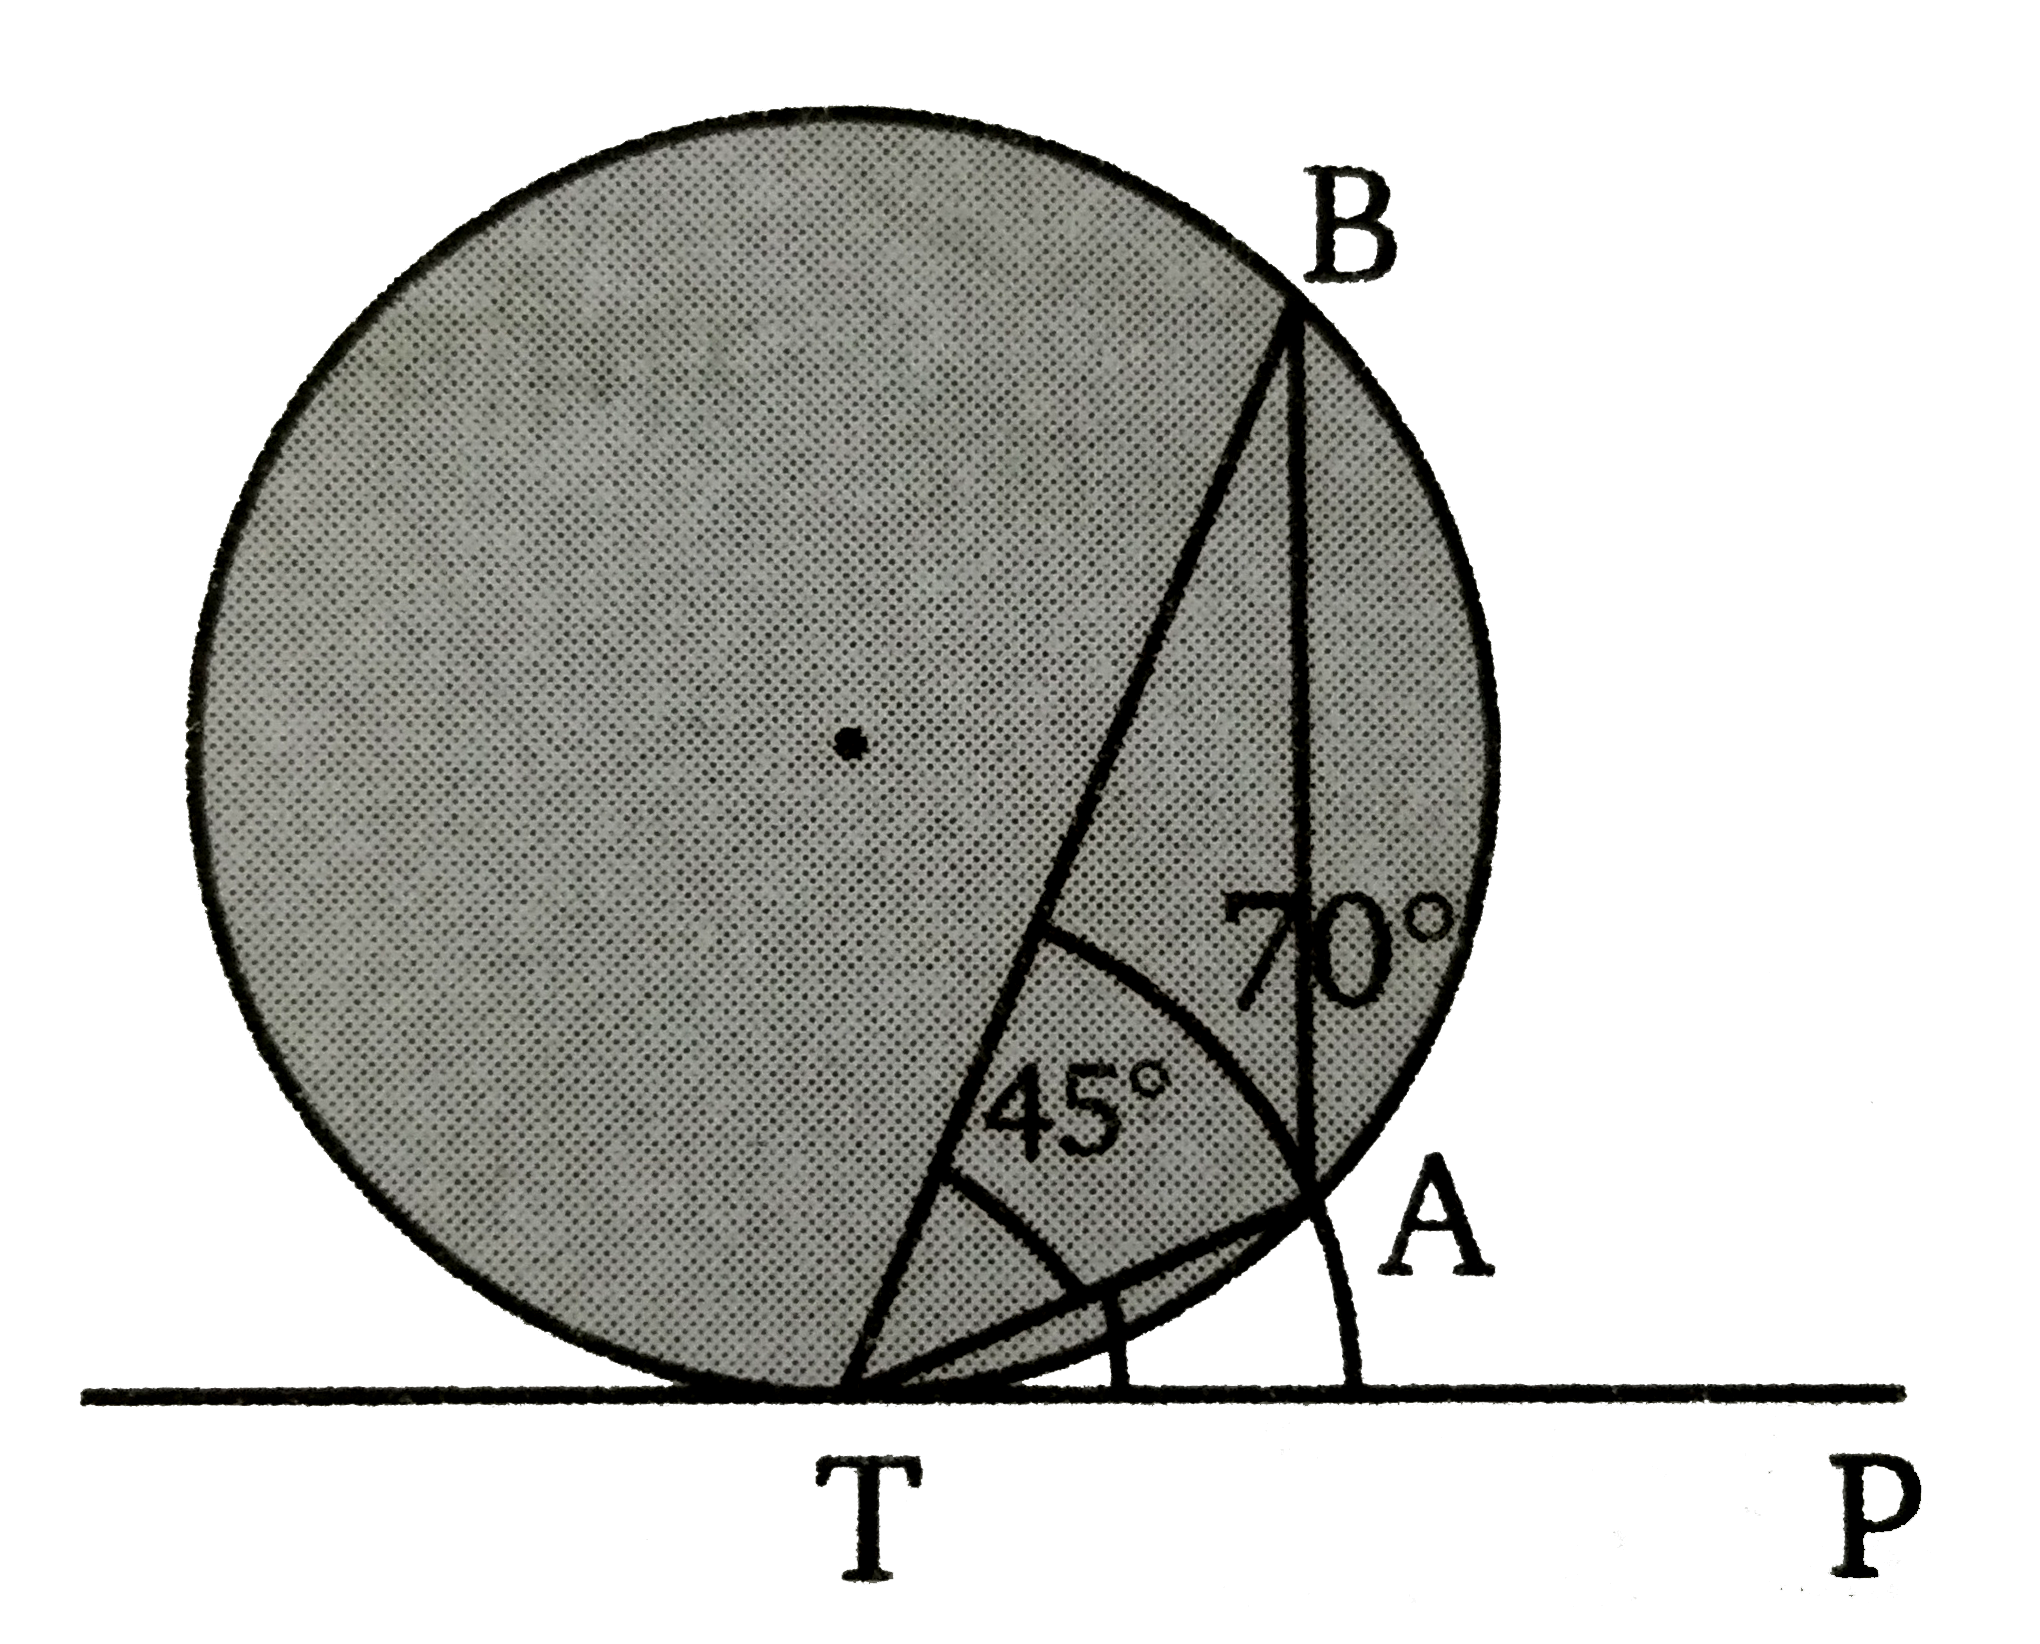 चित्र में PT,  वृत्त की स्पर्शी है। यदि angle BTA = 45^(@)  व angle PTB = 70^(@)  तब angle ATP  का मान ज्ञात कीजिए ।